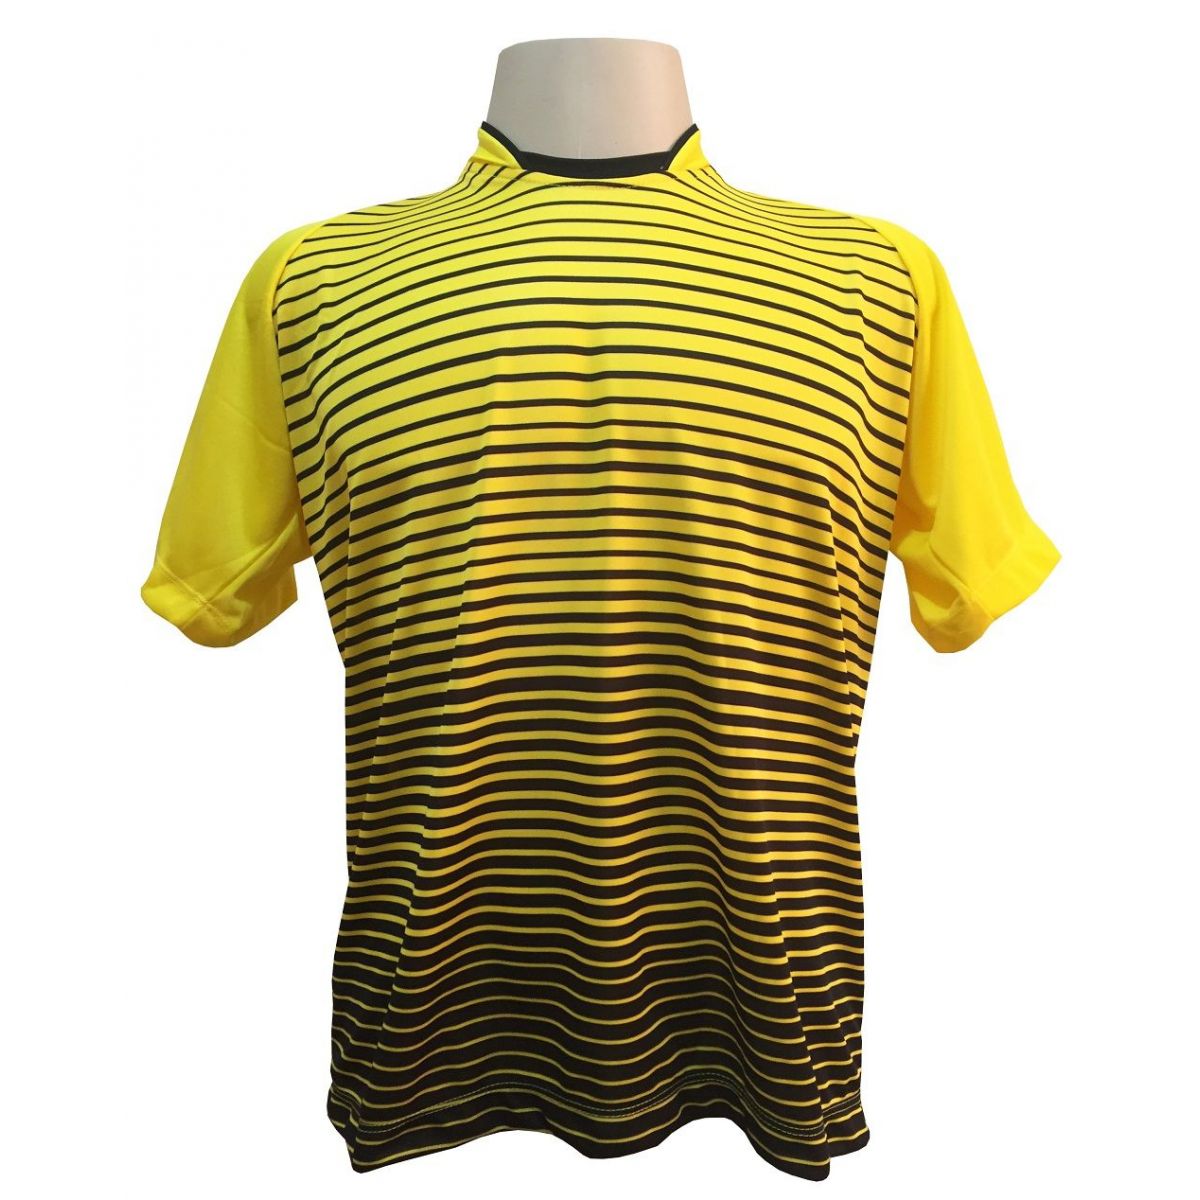 Uniforme Esportivo com 12 camisas modelo City Amarelo/Preto + 12 calções modelo Madrid + 1 Goleiro + Brindes